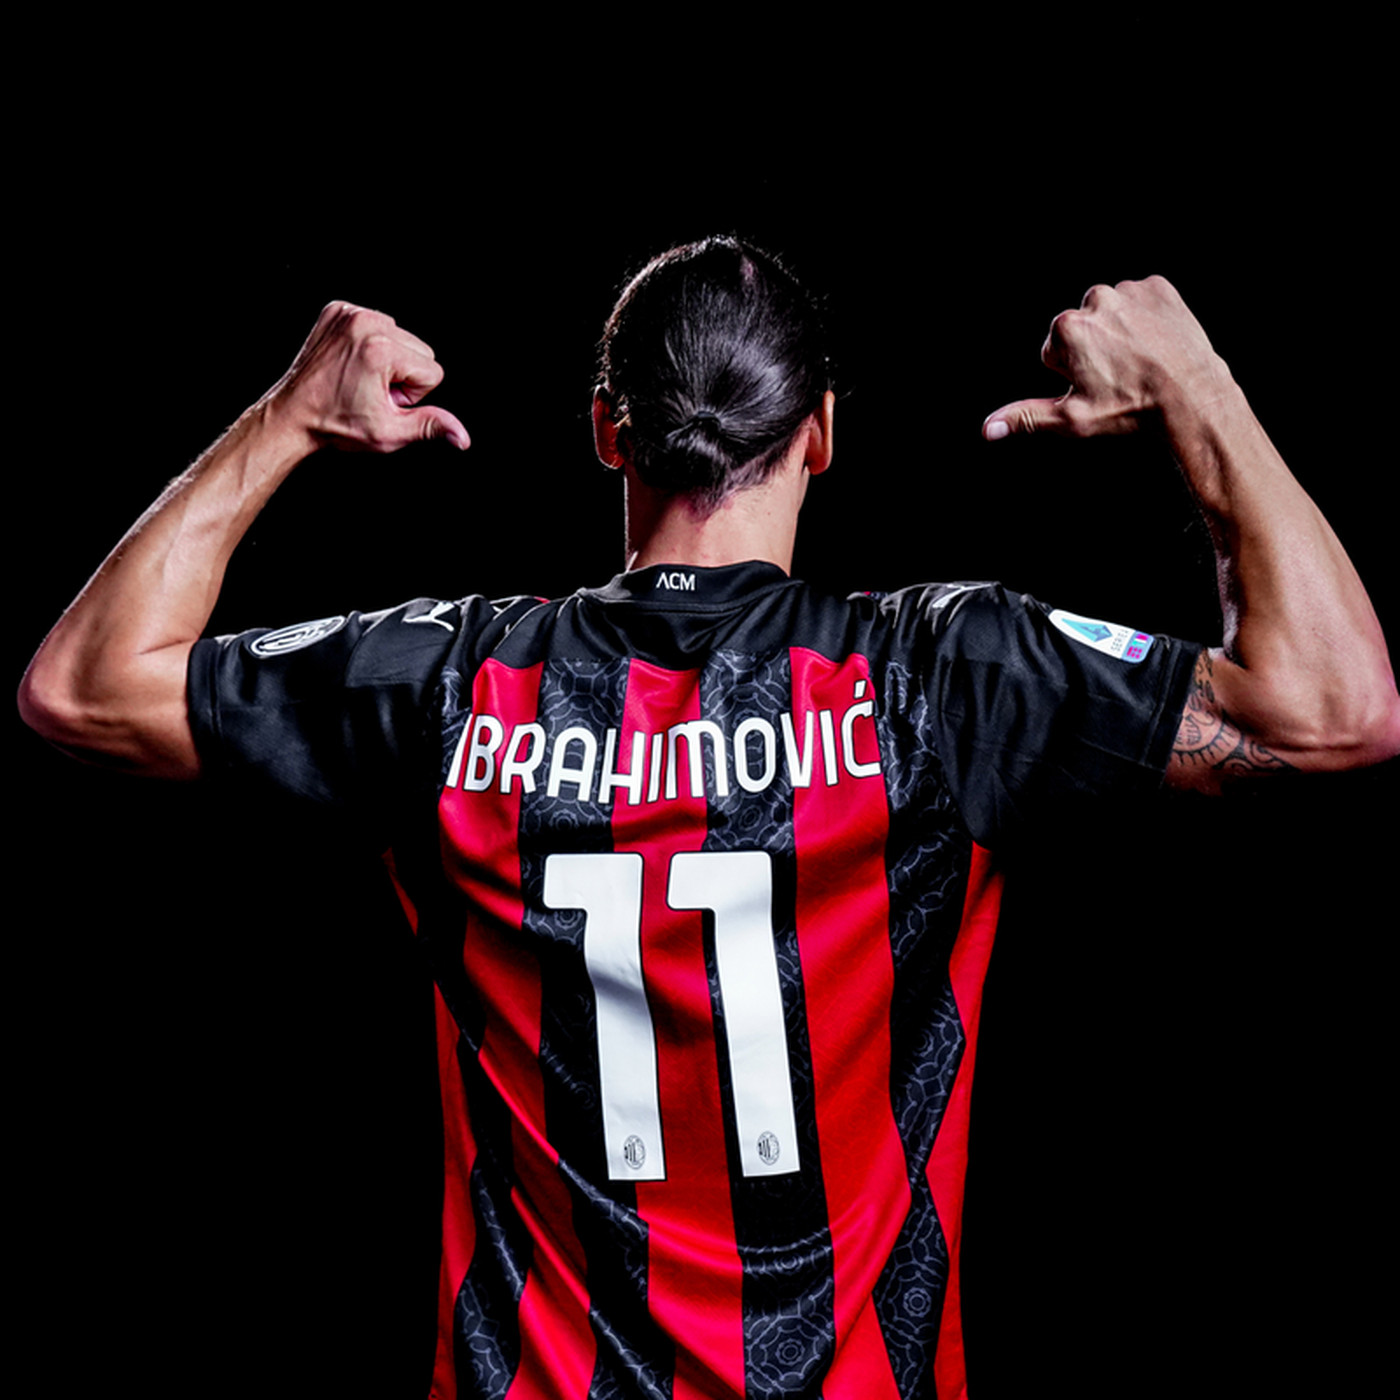 Ibrahimovic